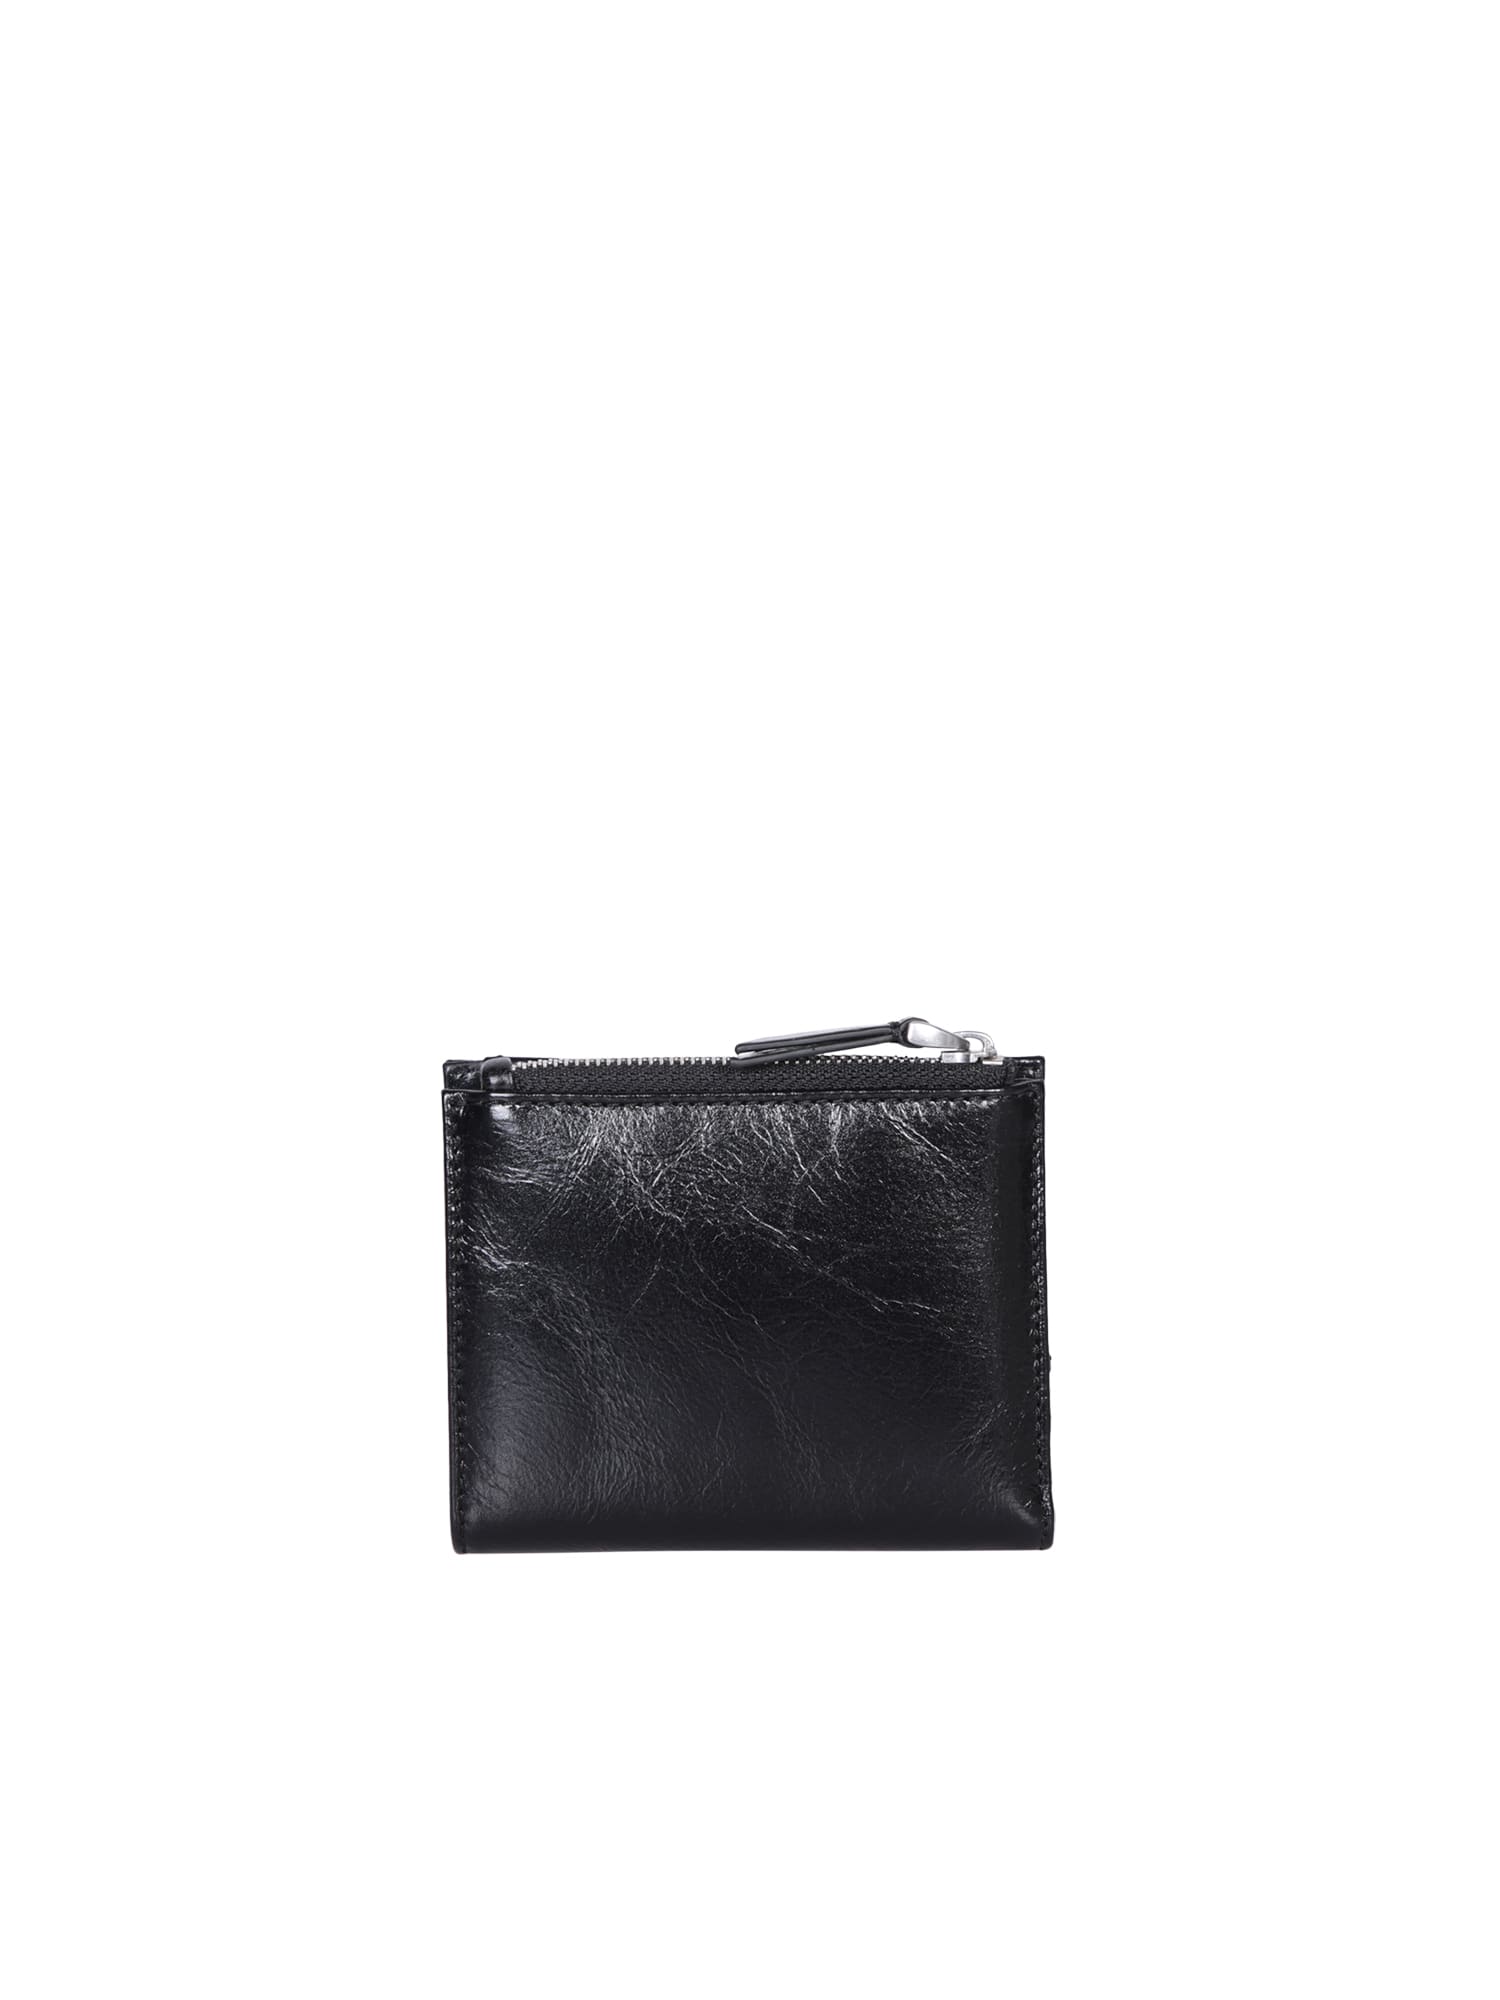 Shop Ami Alexandre Mattiussi Ami Paris Voulez Black Leather Wallet